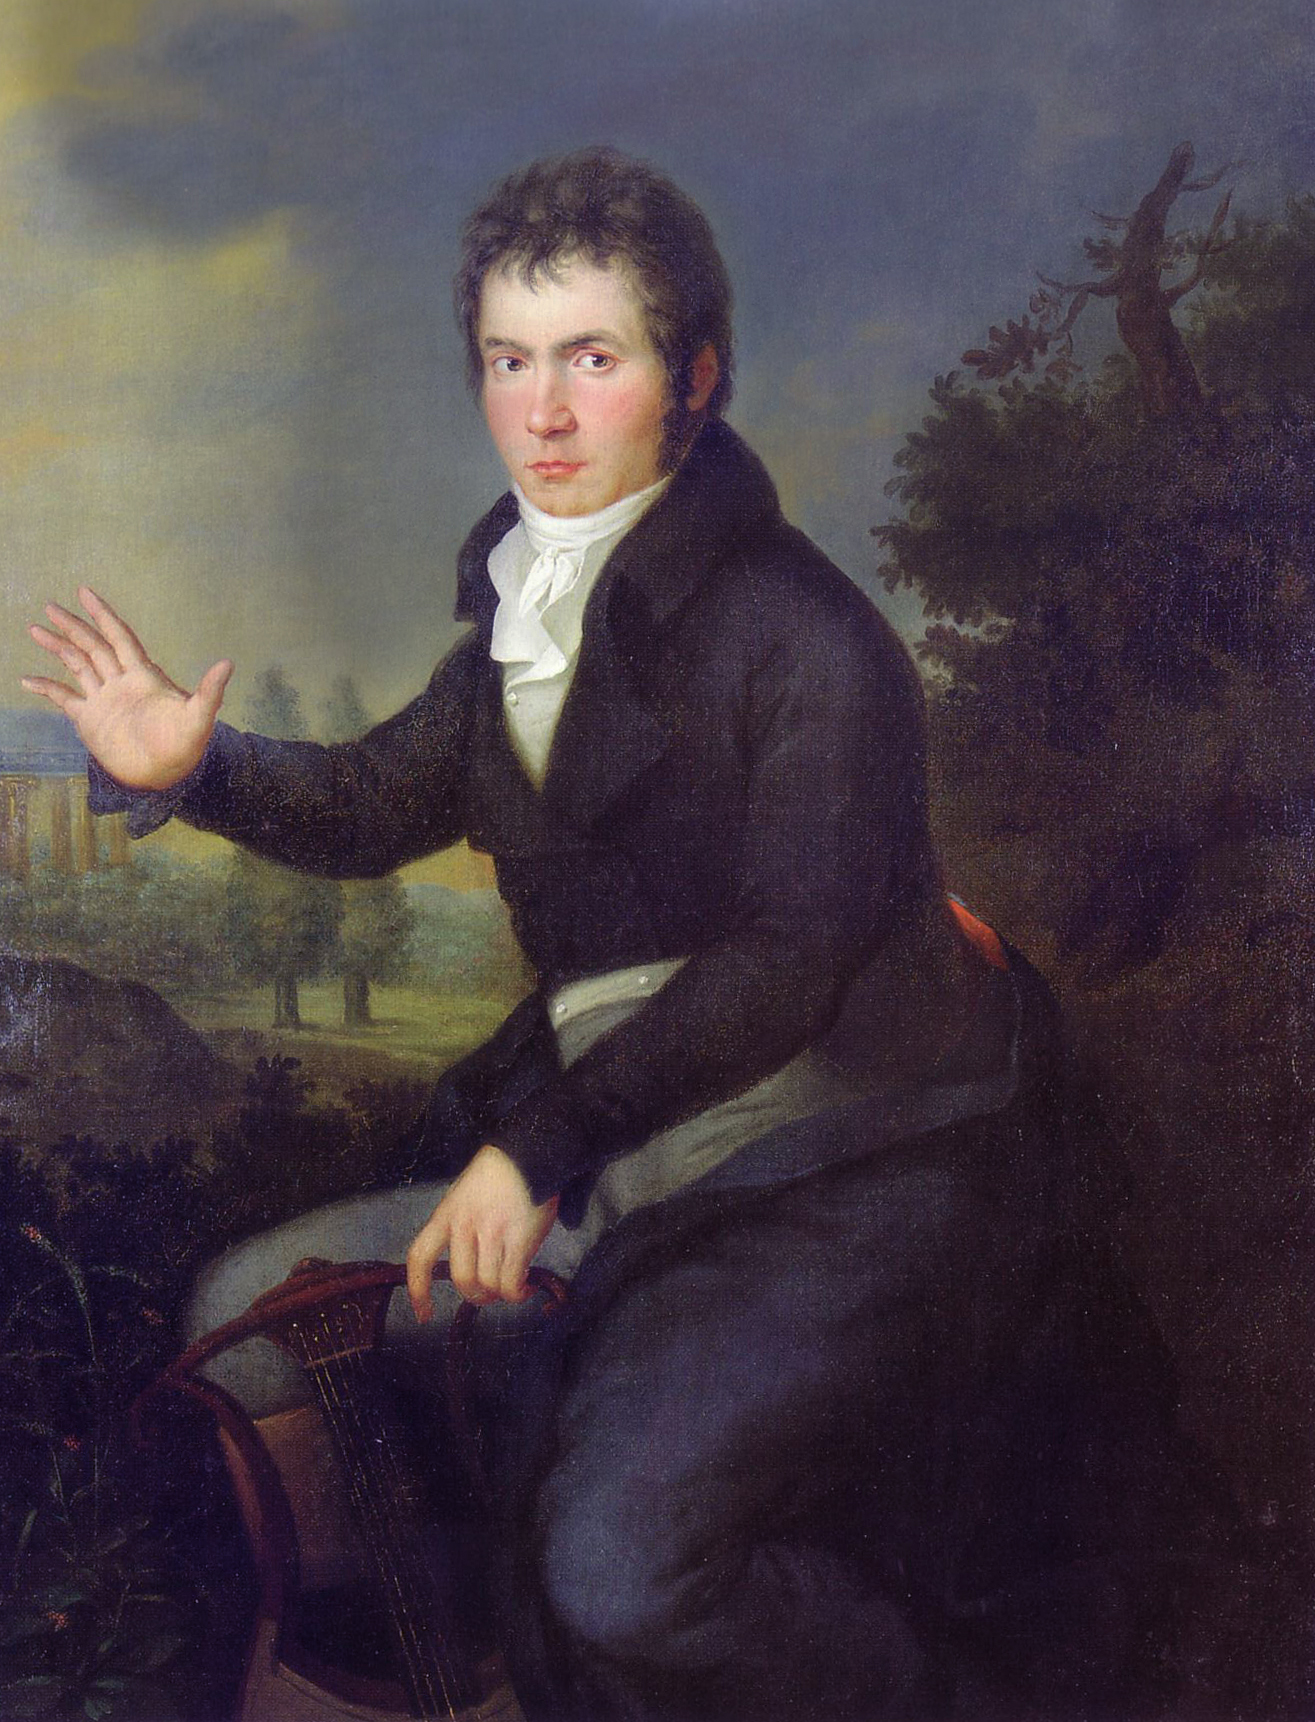 portrait de BEETHOVEN, peint par Joseph Willibrord Mähler (1778-1860) en 1804 ou 1805, cliquer pour voir l'original